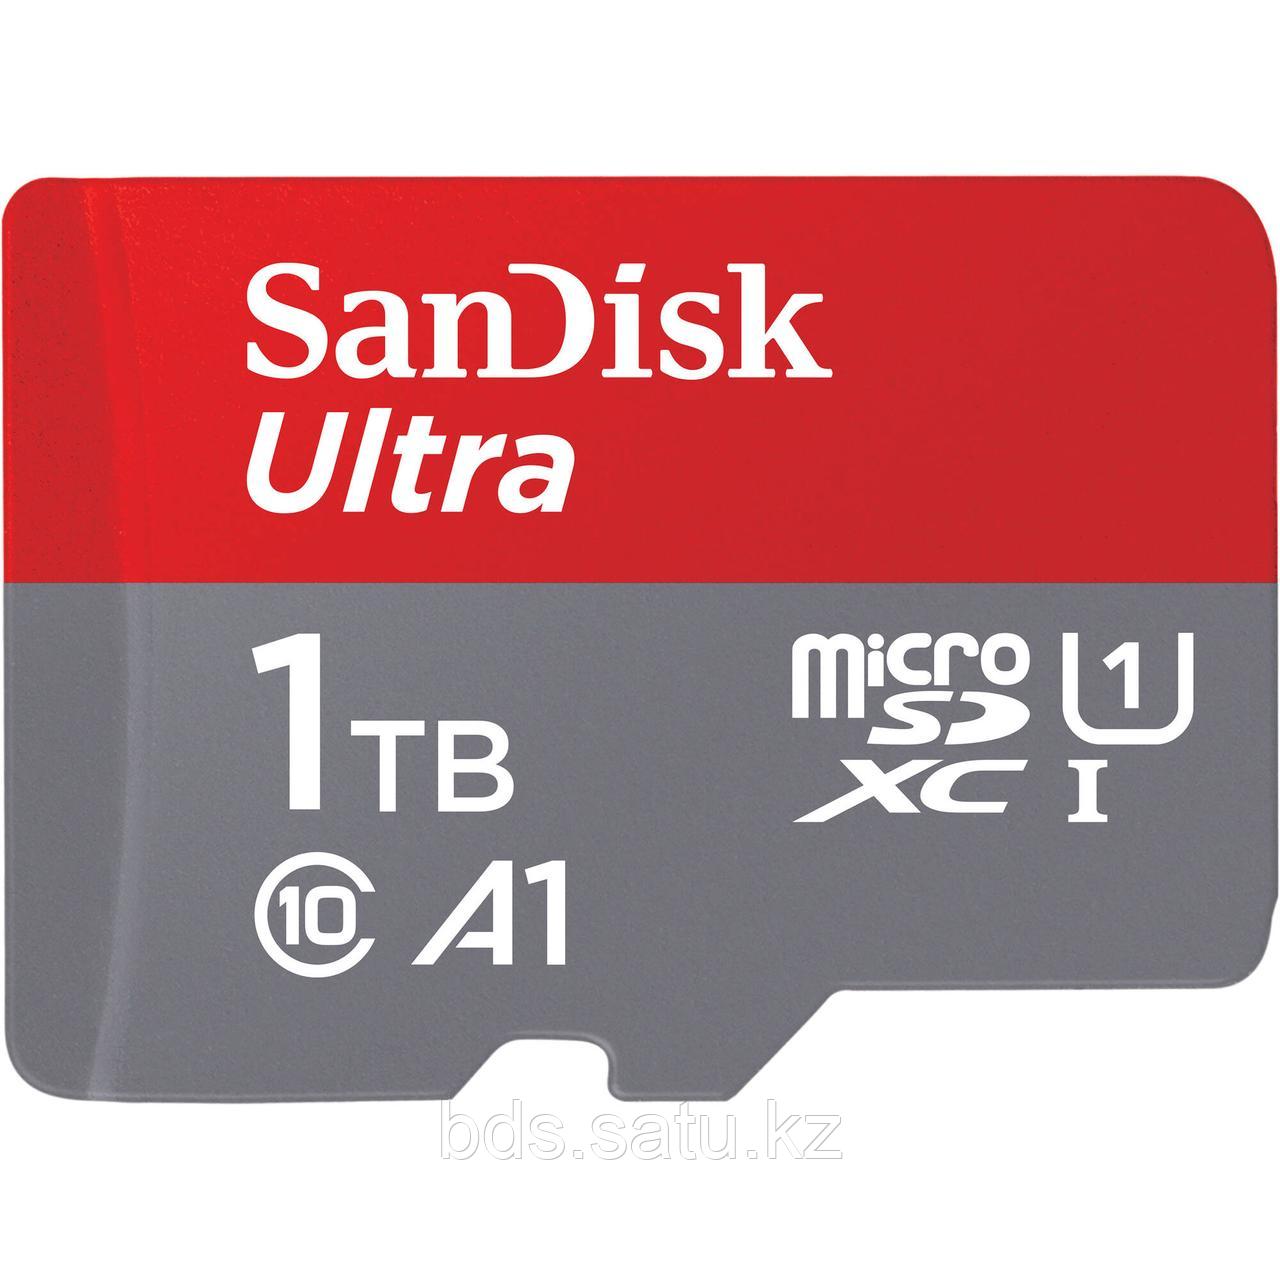 SanDisk Ultra 1Tb (150 MB/s) UHS-I microSDXC